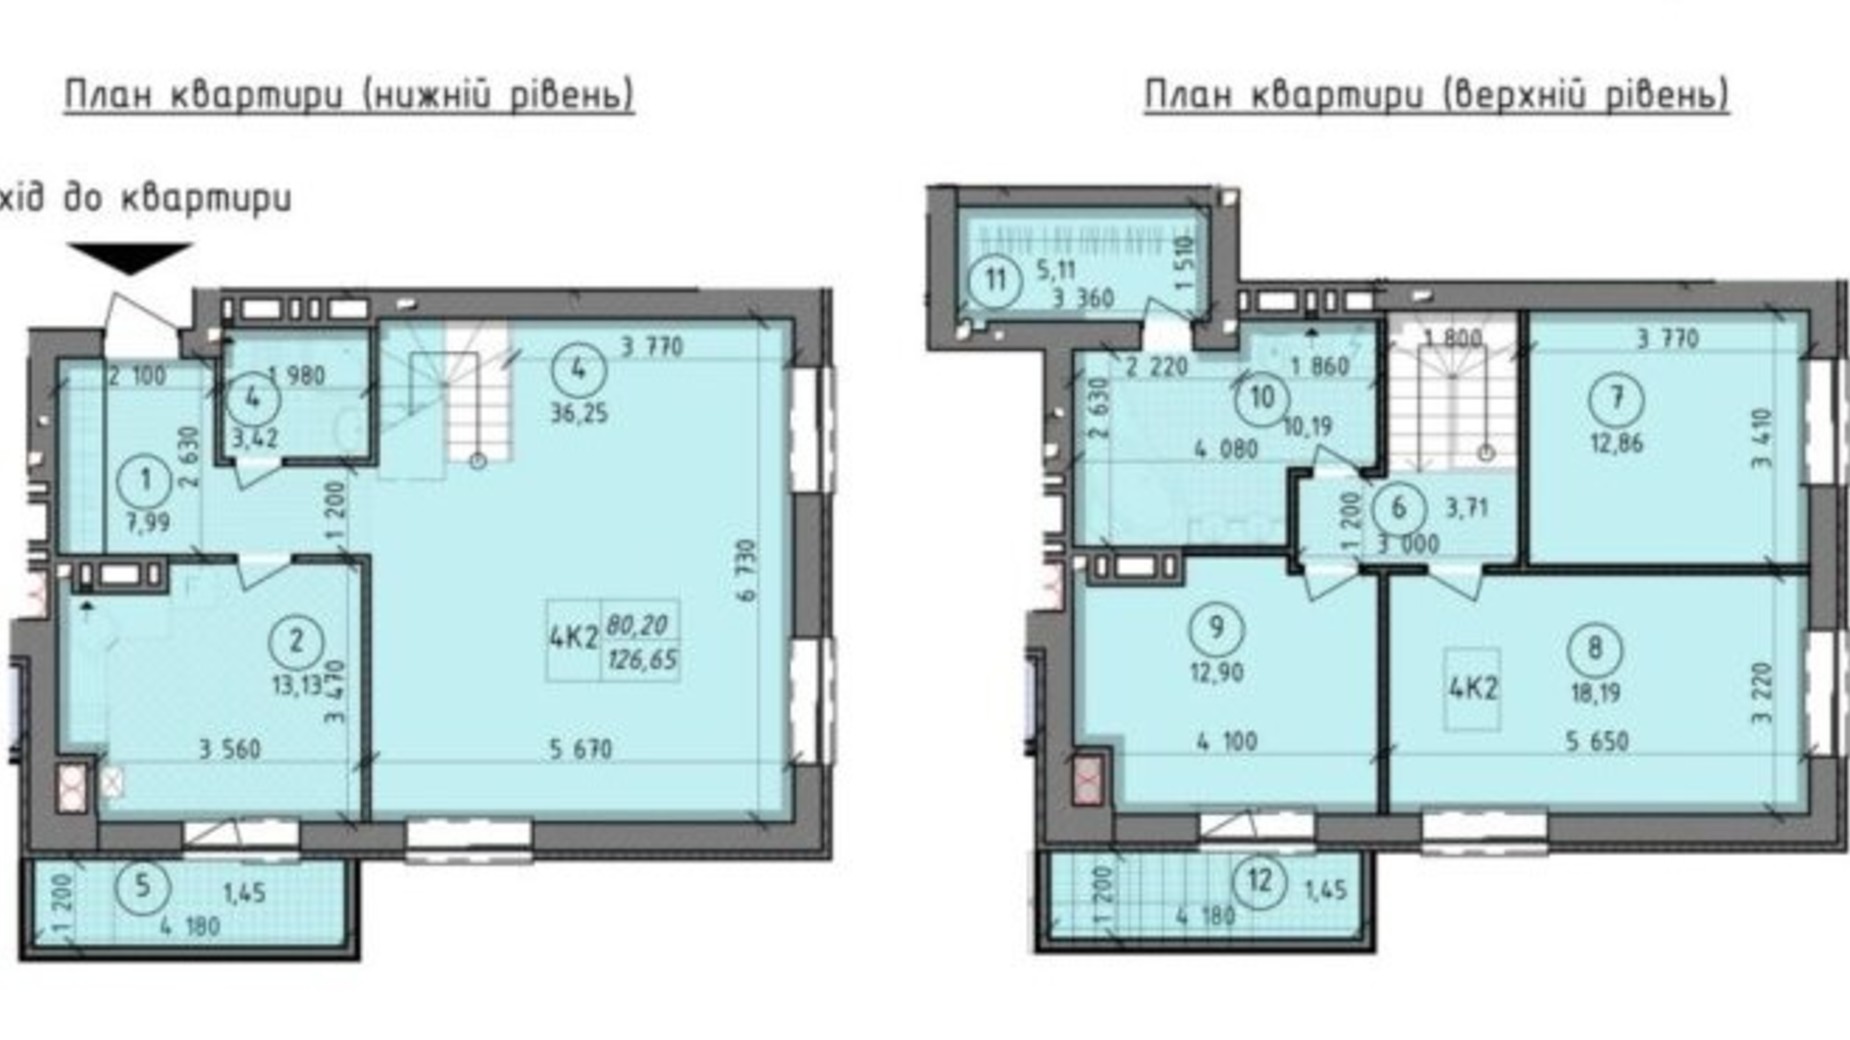 Планировка много­уровневой квартиры в ЖК Французский Бульвар 126.65 м², фото 349848